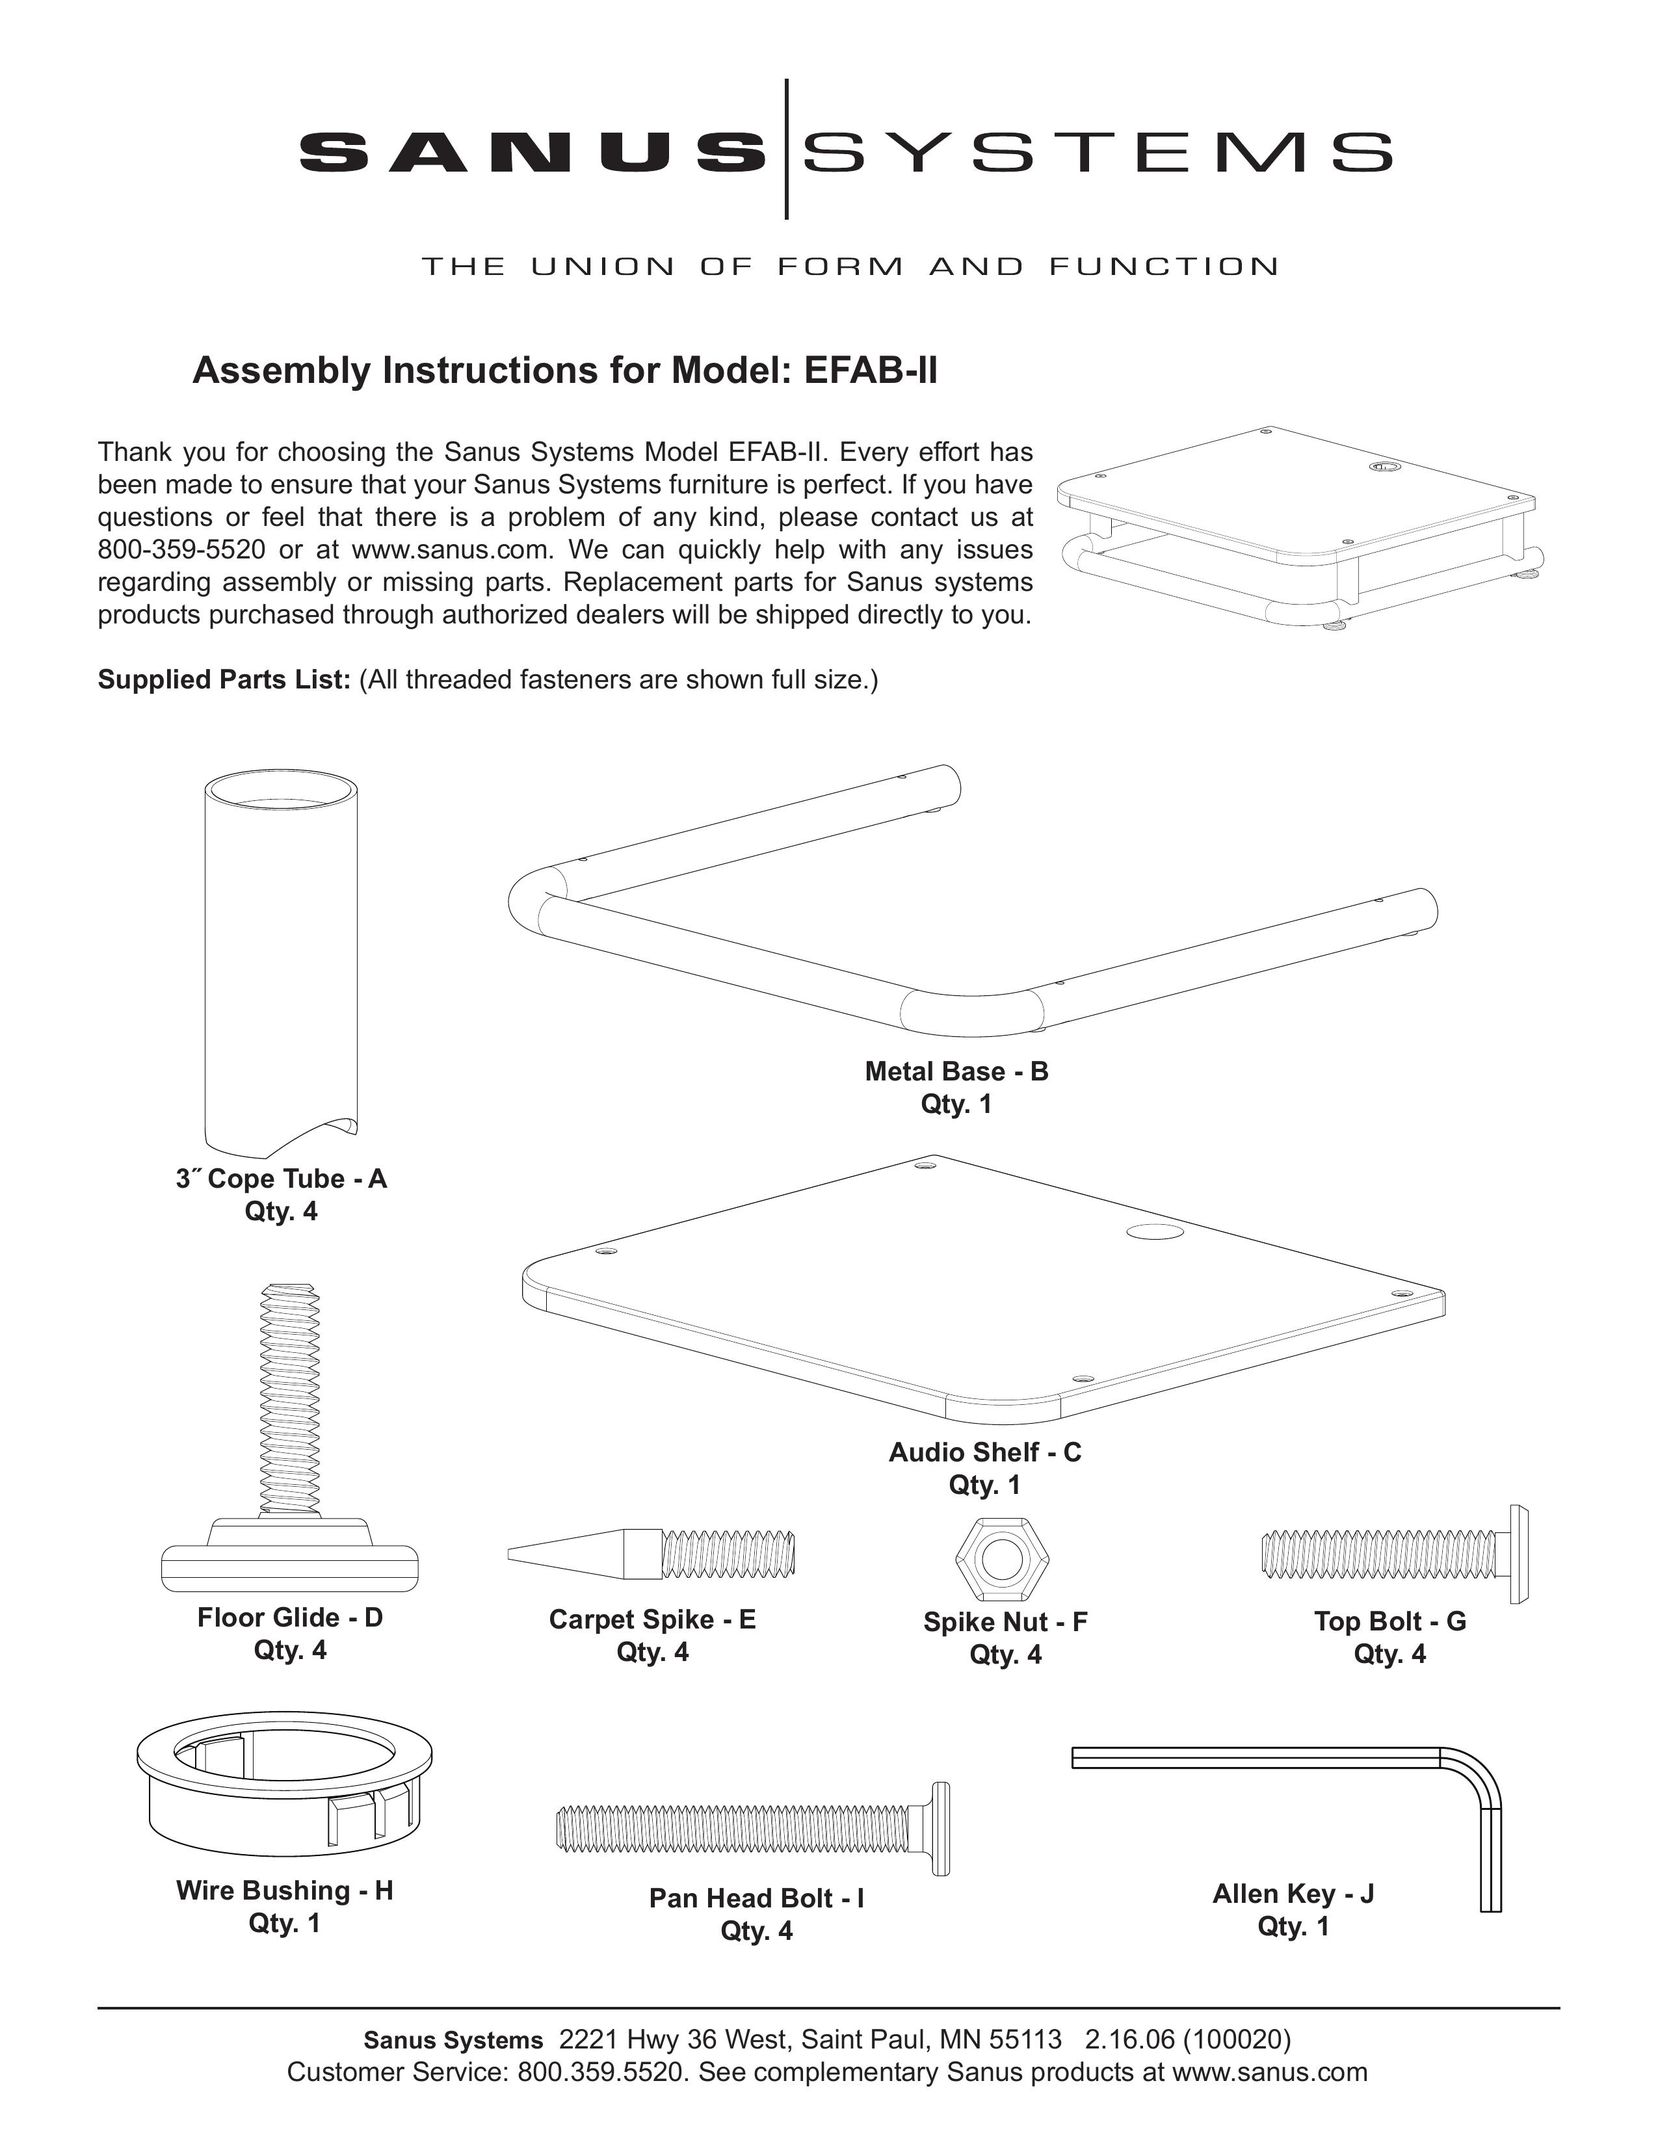 Sanus Systems EFAB-II Indoor Furnishings User Manual